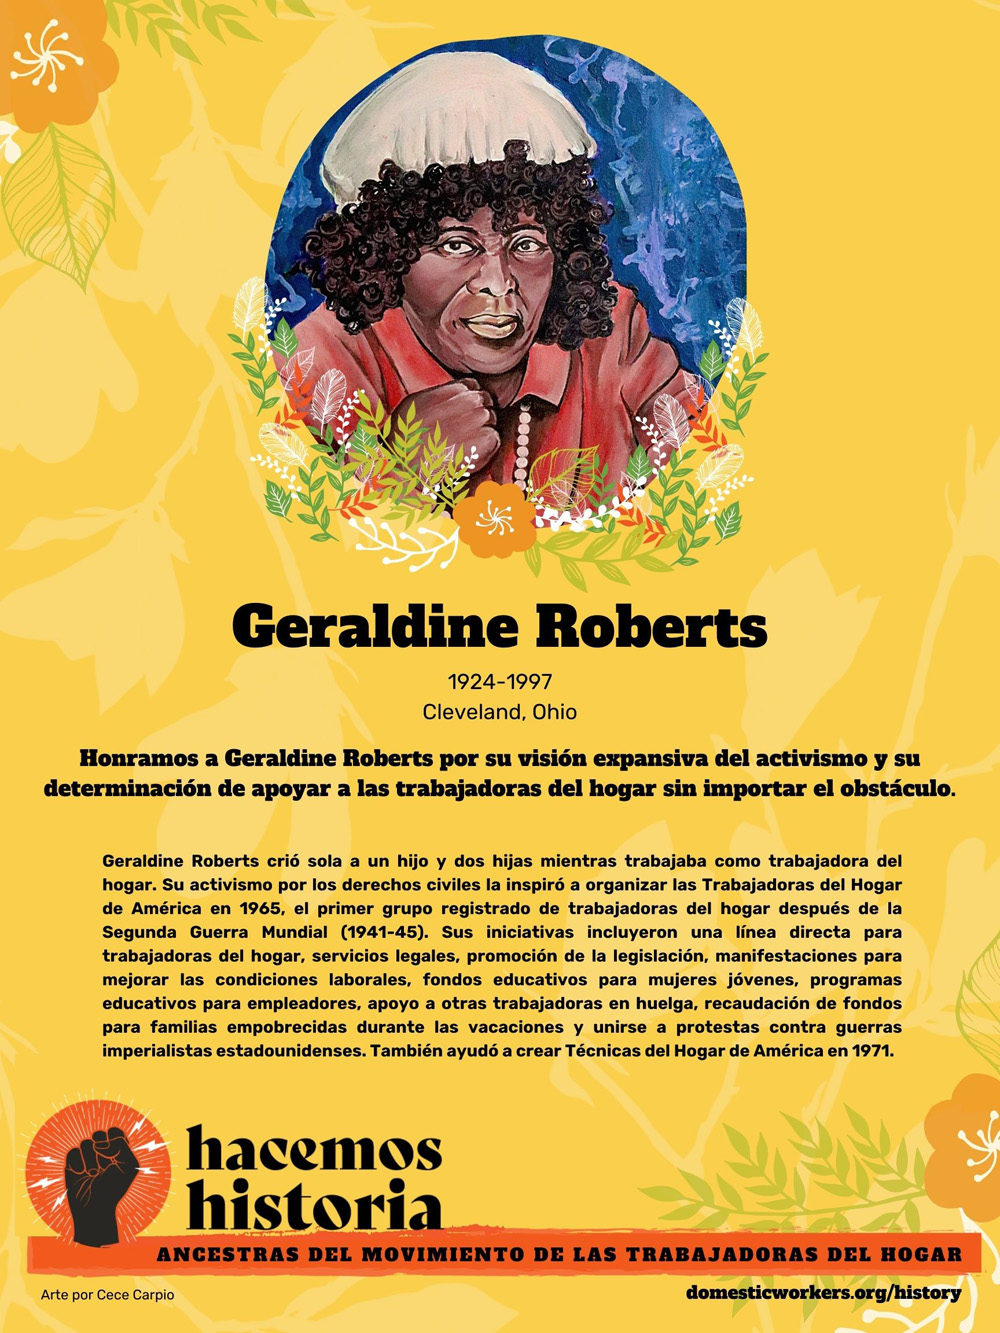 Retratos de las ancestras del movimiento de trabajadoras de hogar: Geraldine Roberts